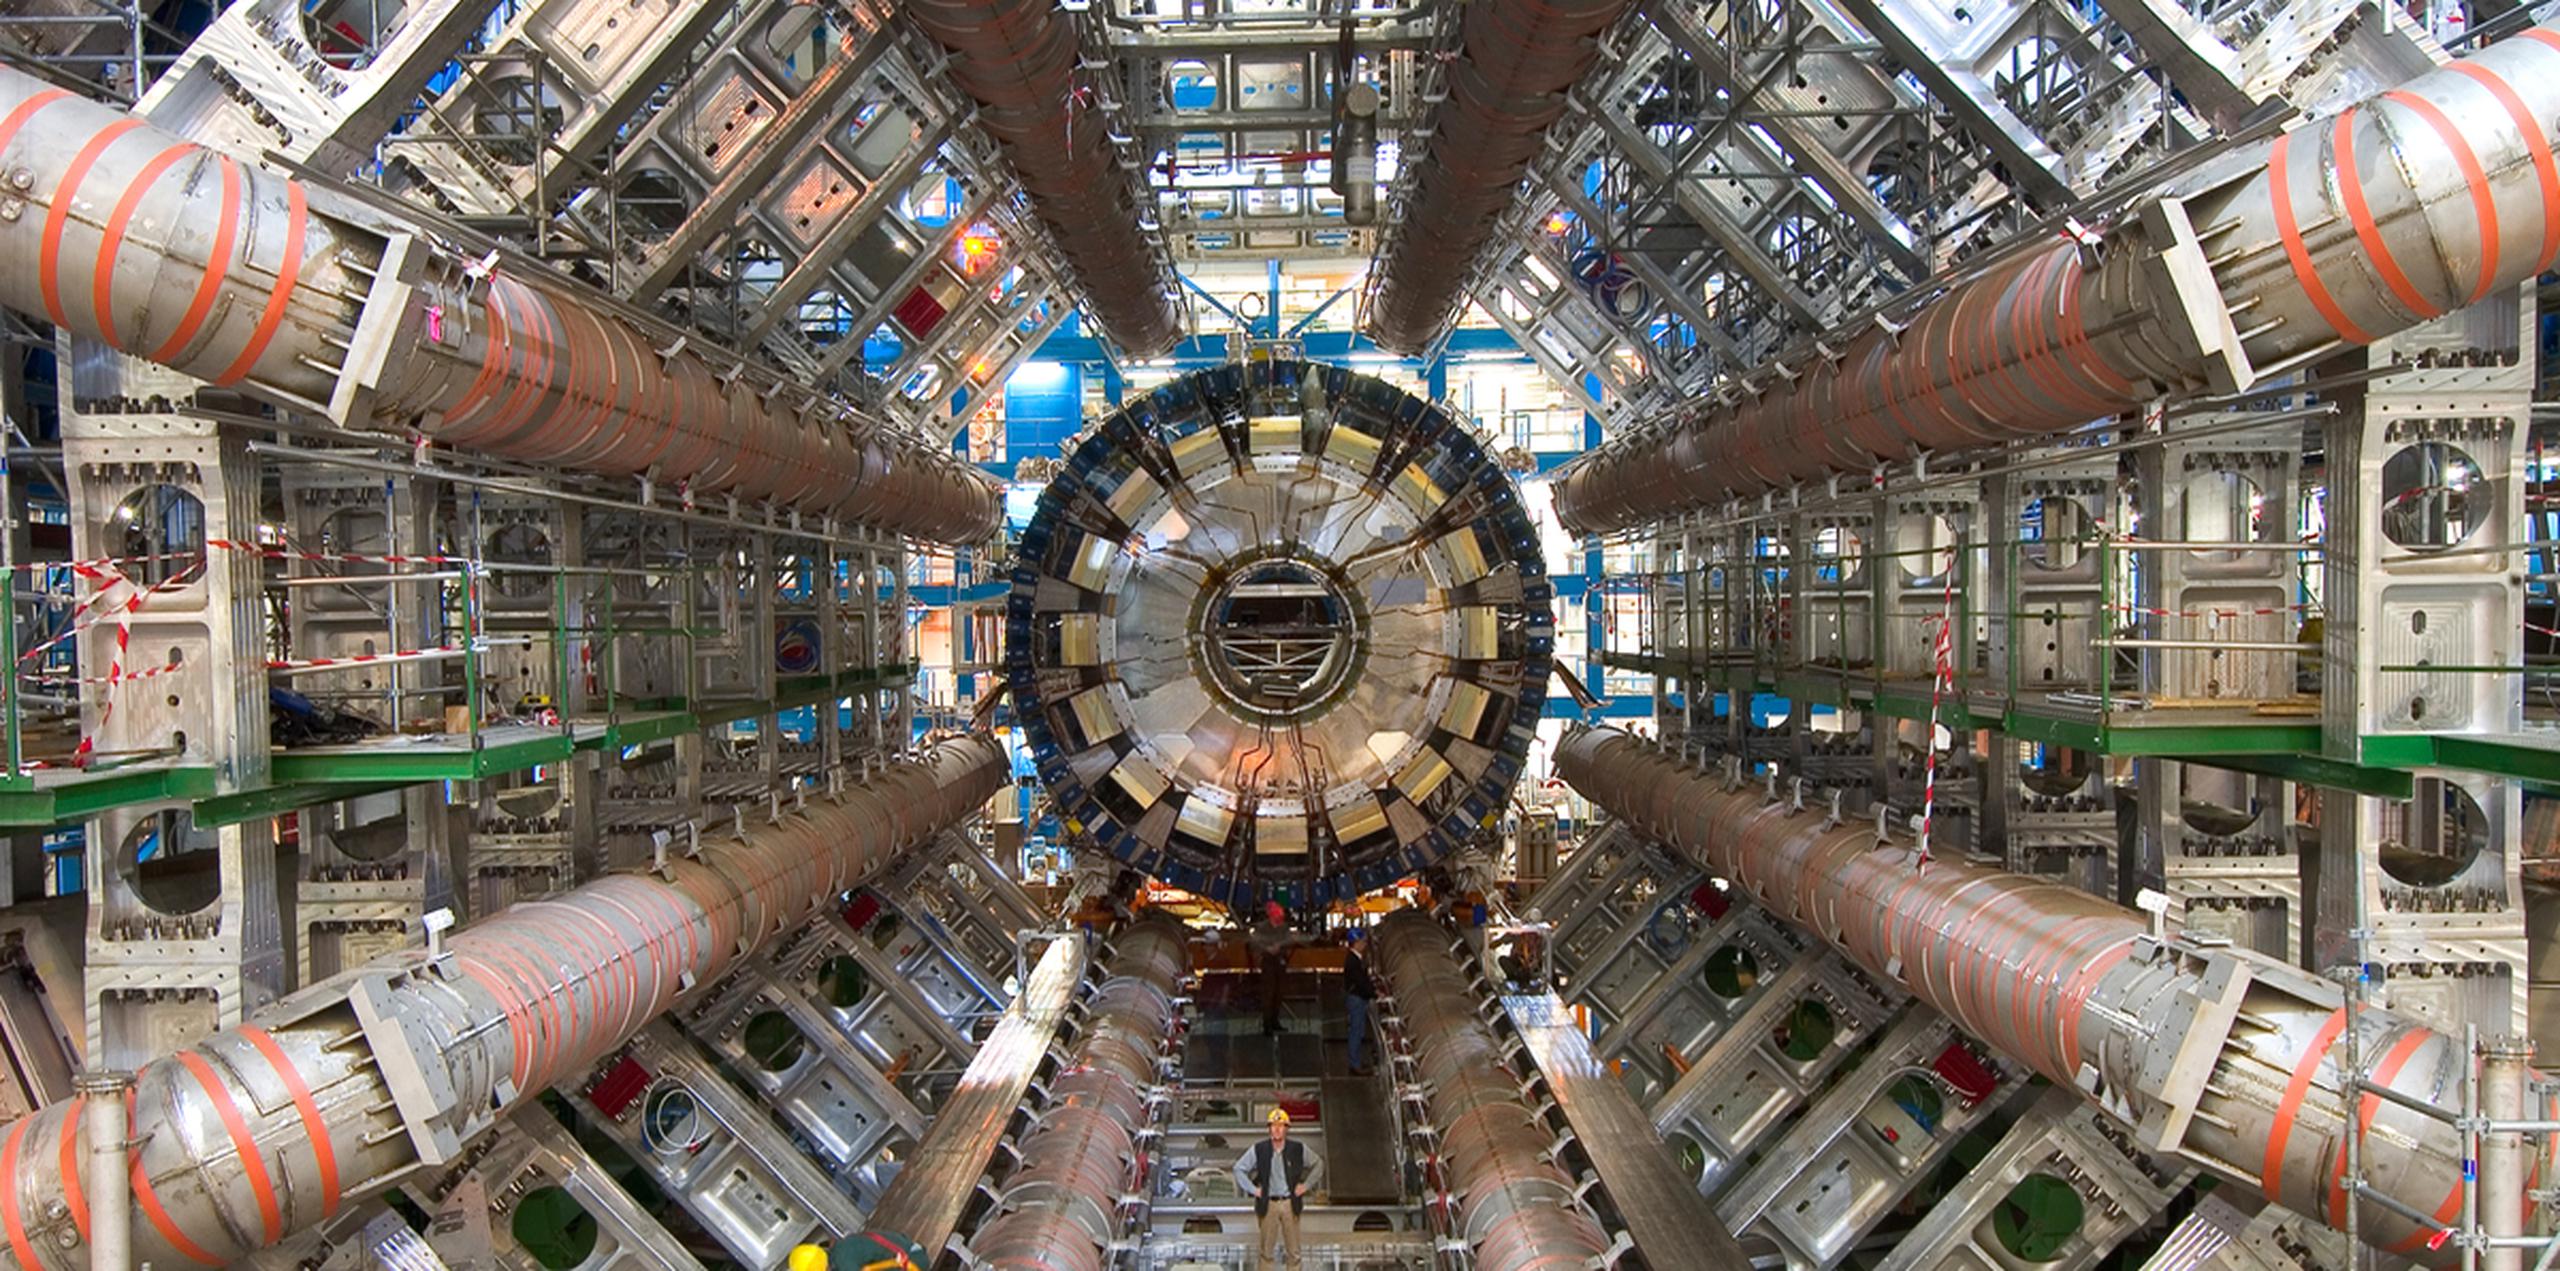 En varios experimentos realizados en el LHCb (Large Hadron Collider beauty experiment) -uno de los detectores de partículas en funcionamiento instalados en el Gran Colisionador de Hadrones (LHC)- los físicos han observado cinco desintegraciones raras de mesones B (partículas compuestas por quarks y antiquarks) que discrepan del Modelo Estándar de Física.